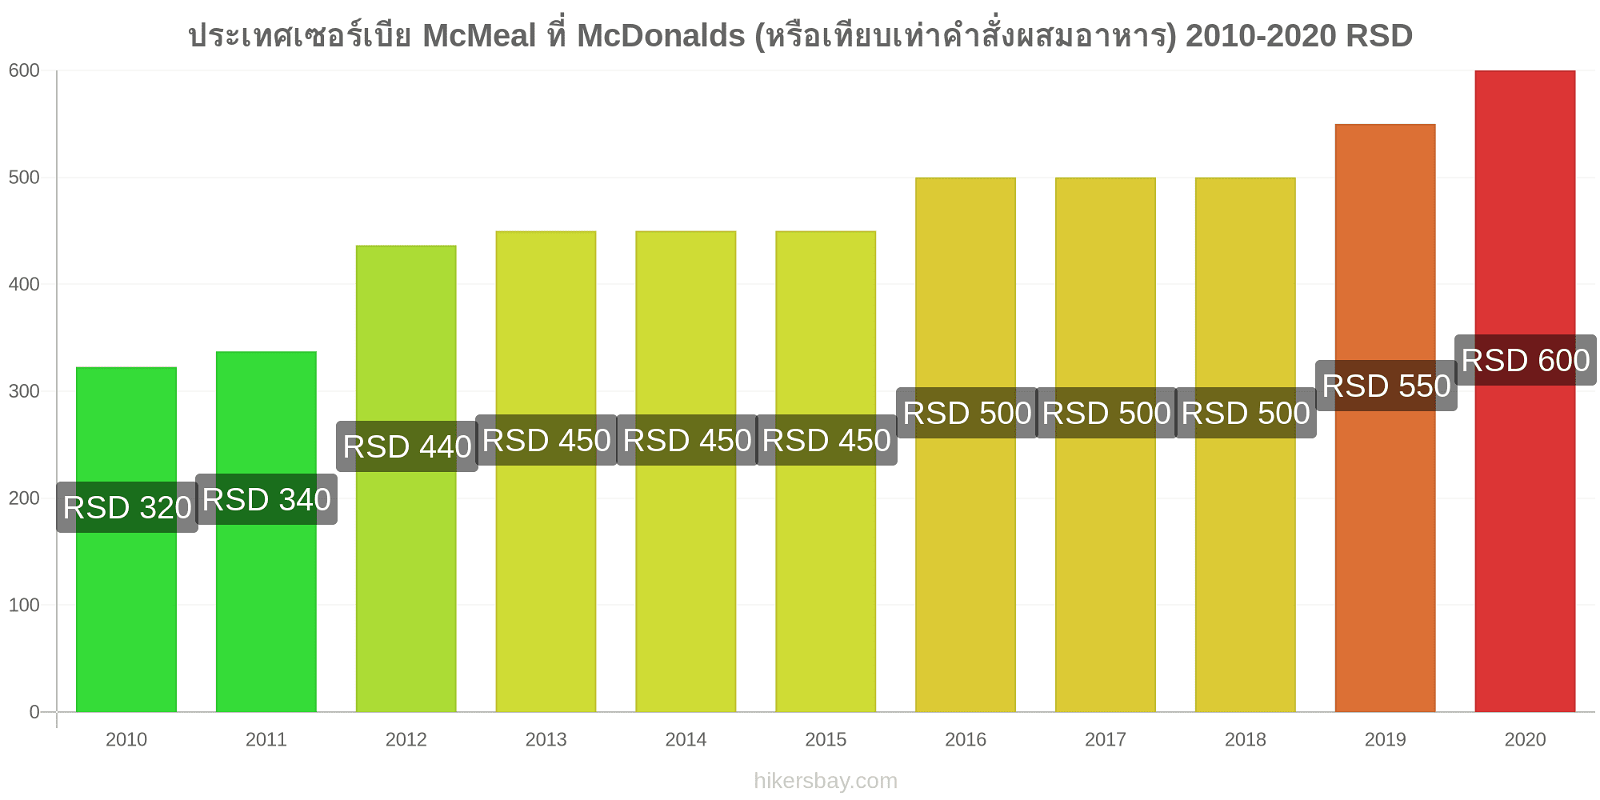 ประเทศเซอร์เบีย การเปลี่ยนแปลงราคา McMeal ที่ McDonalds (หรือเทียบเท่าคำสั่งผสมอาหาร) hikersbay.com